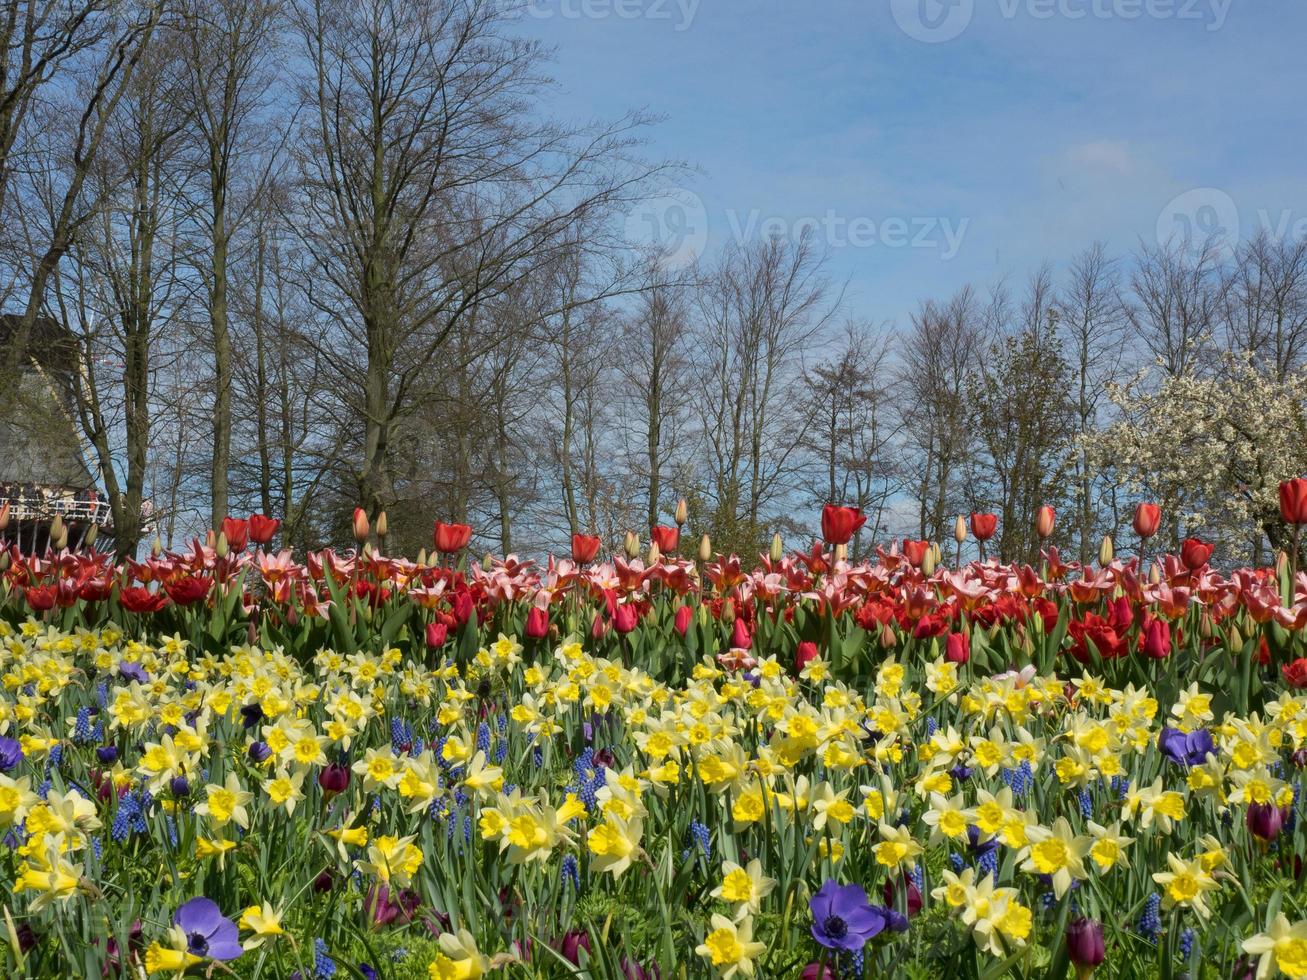 Tulpen in den Niederlanden foto